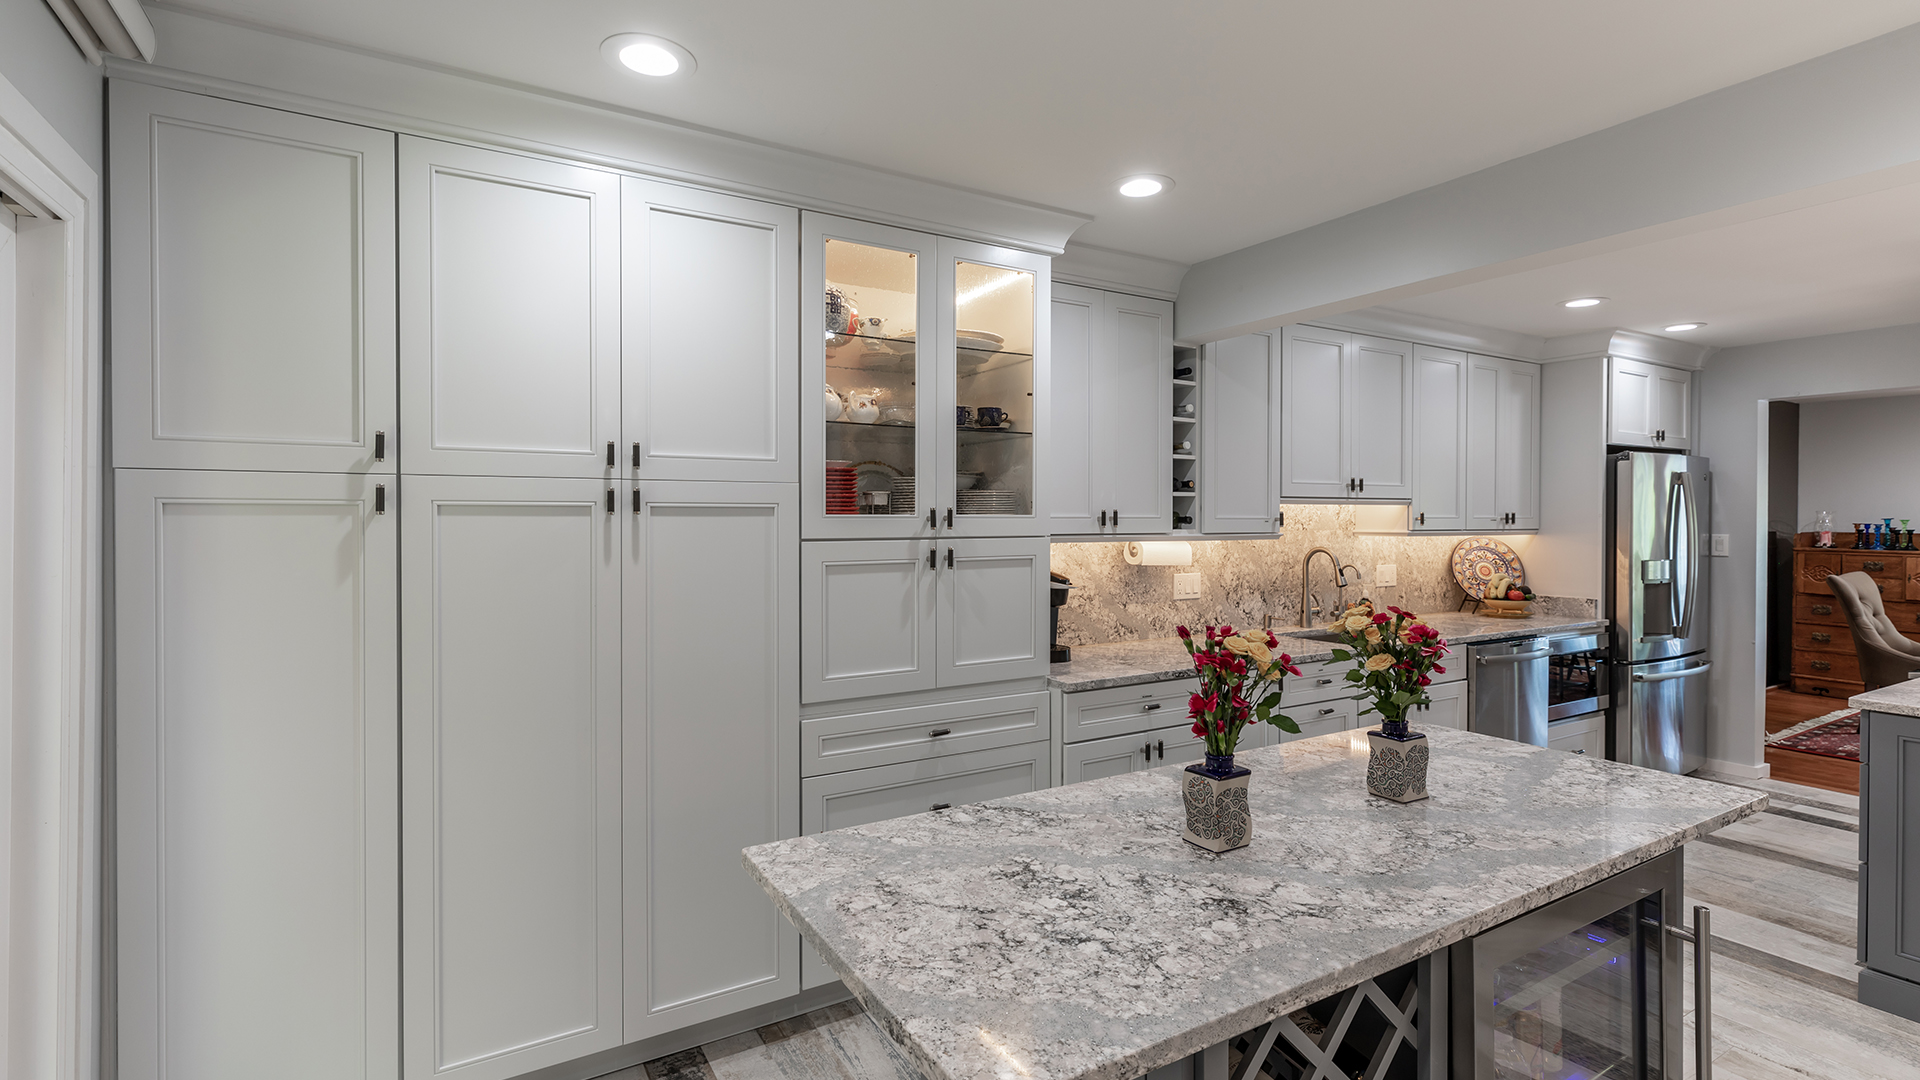 2021 NARI Metro DC Coty GRAND AWARD Residential Kitchen $30,000 to $60,000